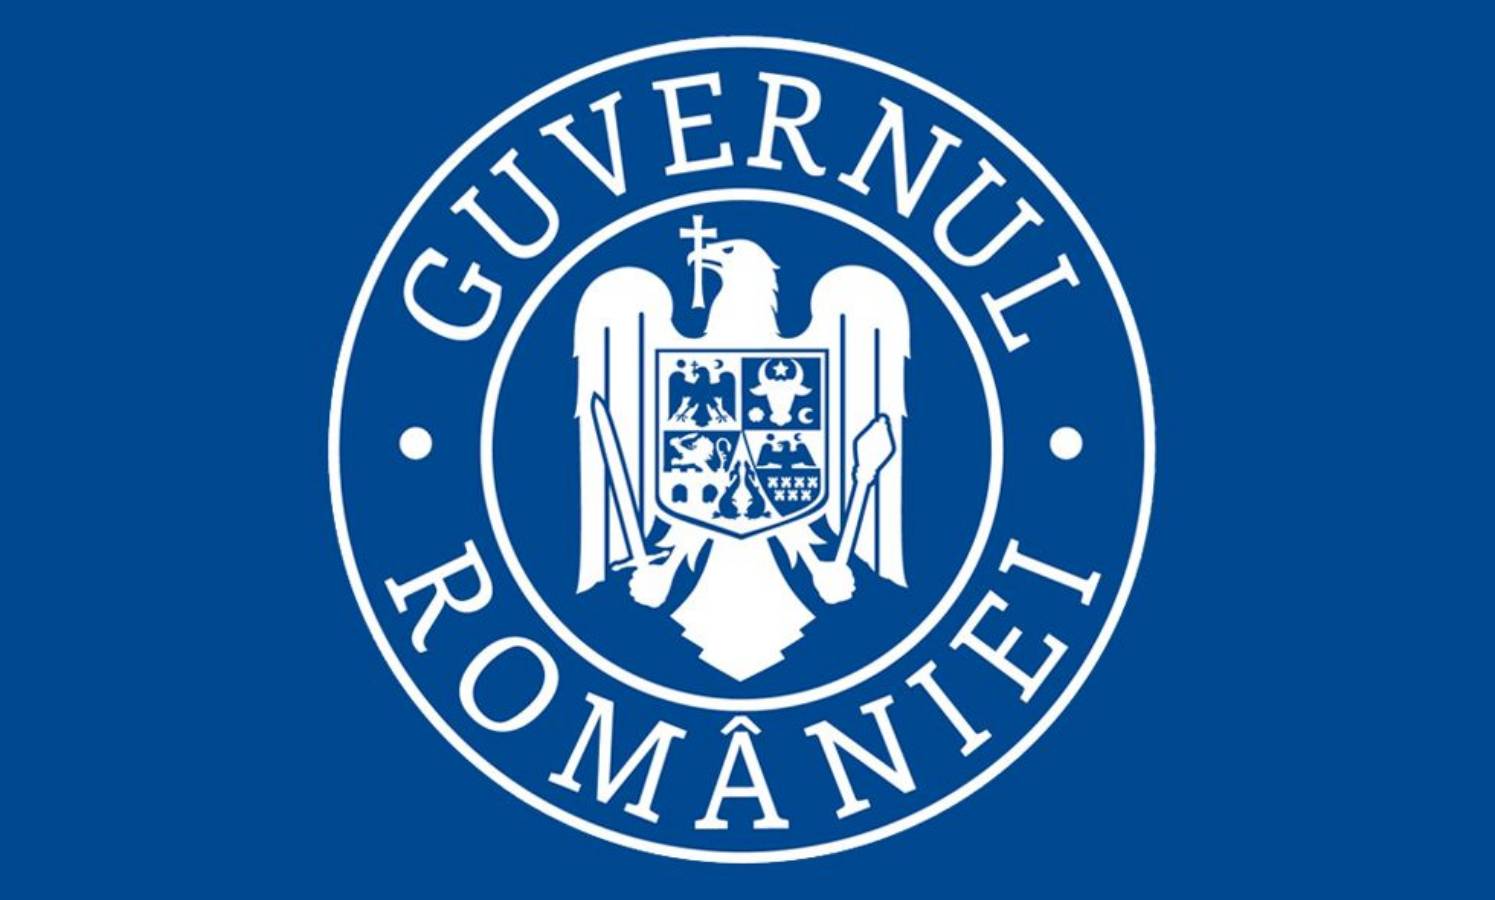 Guvernul Romaniei carantina spania coronavirus